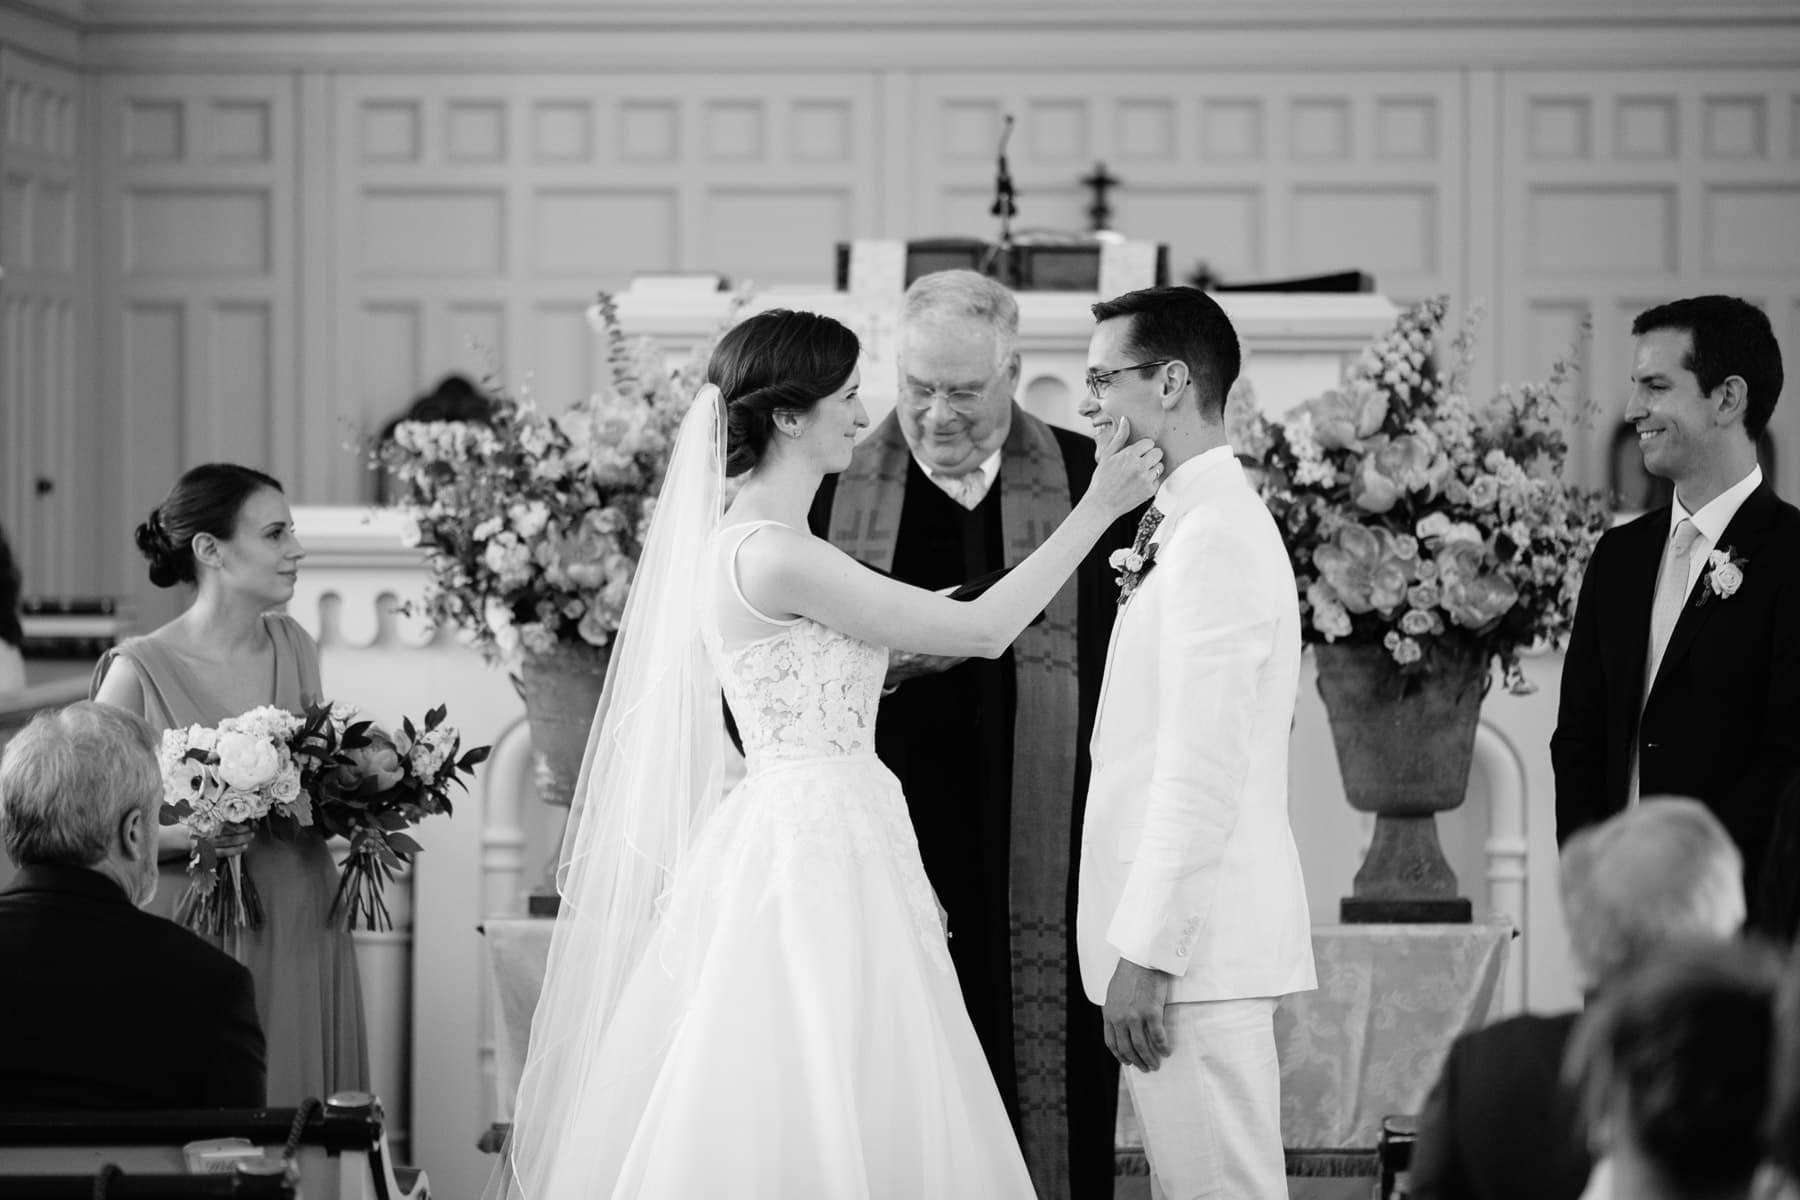 tender exchange between bride and groom, church wedding ceremony, Kent, Connecticut